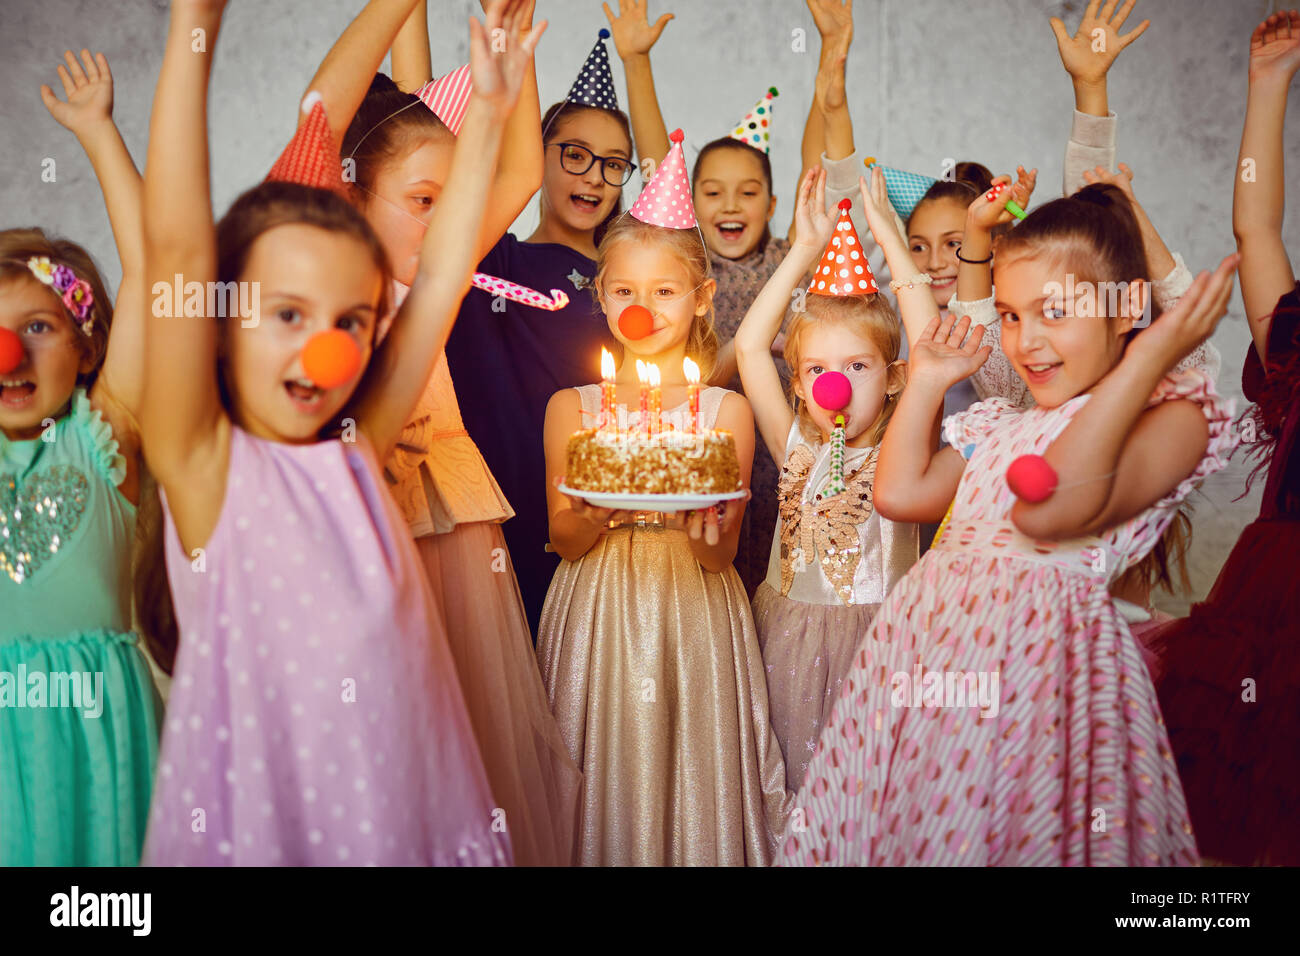 Kinder mit einer Geburtstagstorte haben Spaß. Stockfoto